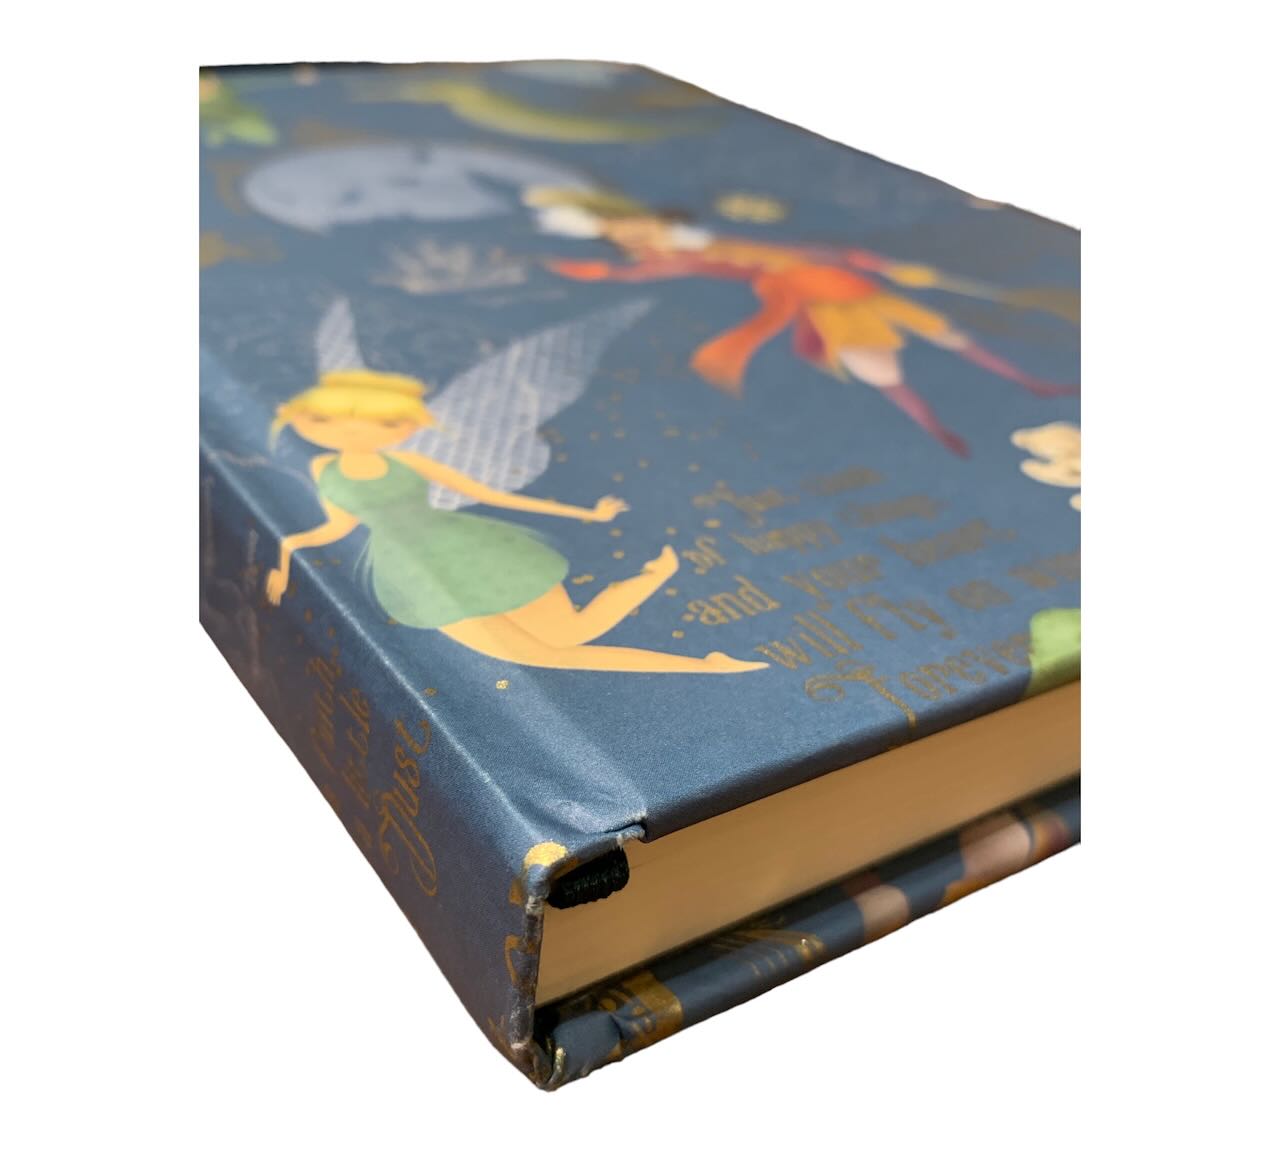 Elegantes Notizbuch mit Hardcover aus florentinischem Papier " Peter Pan"